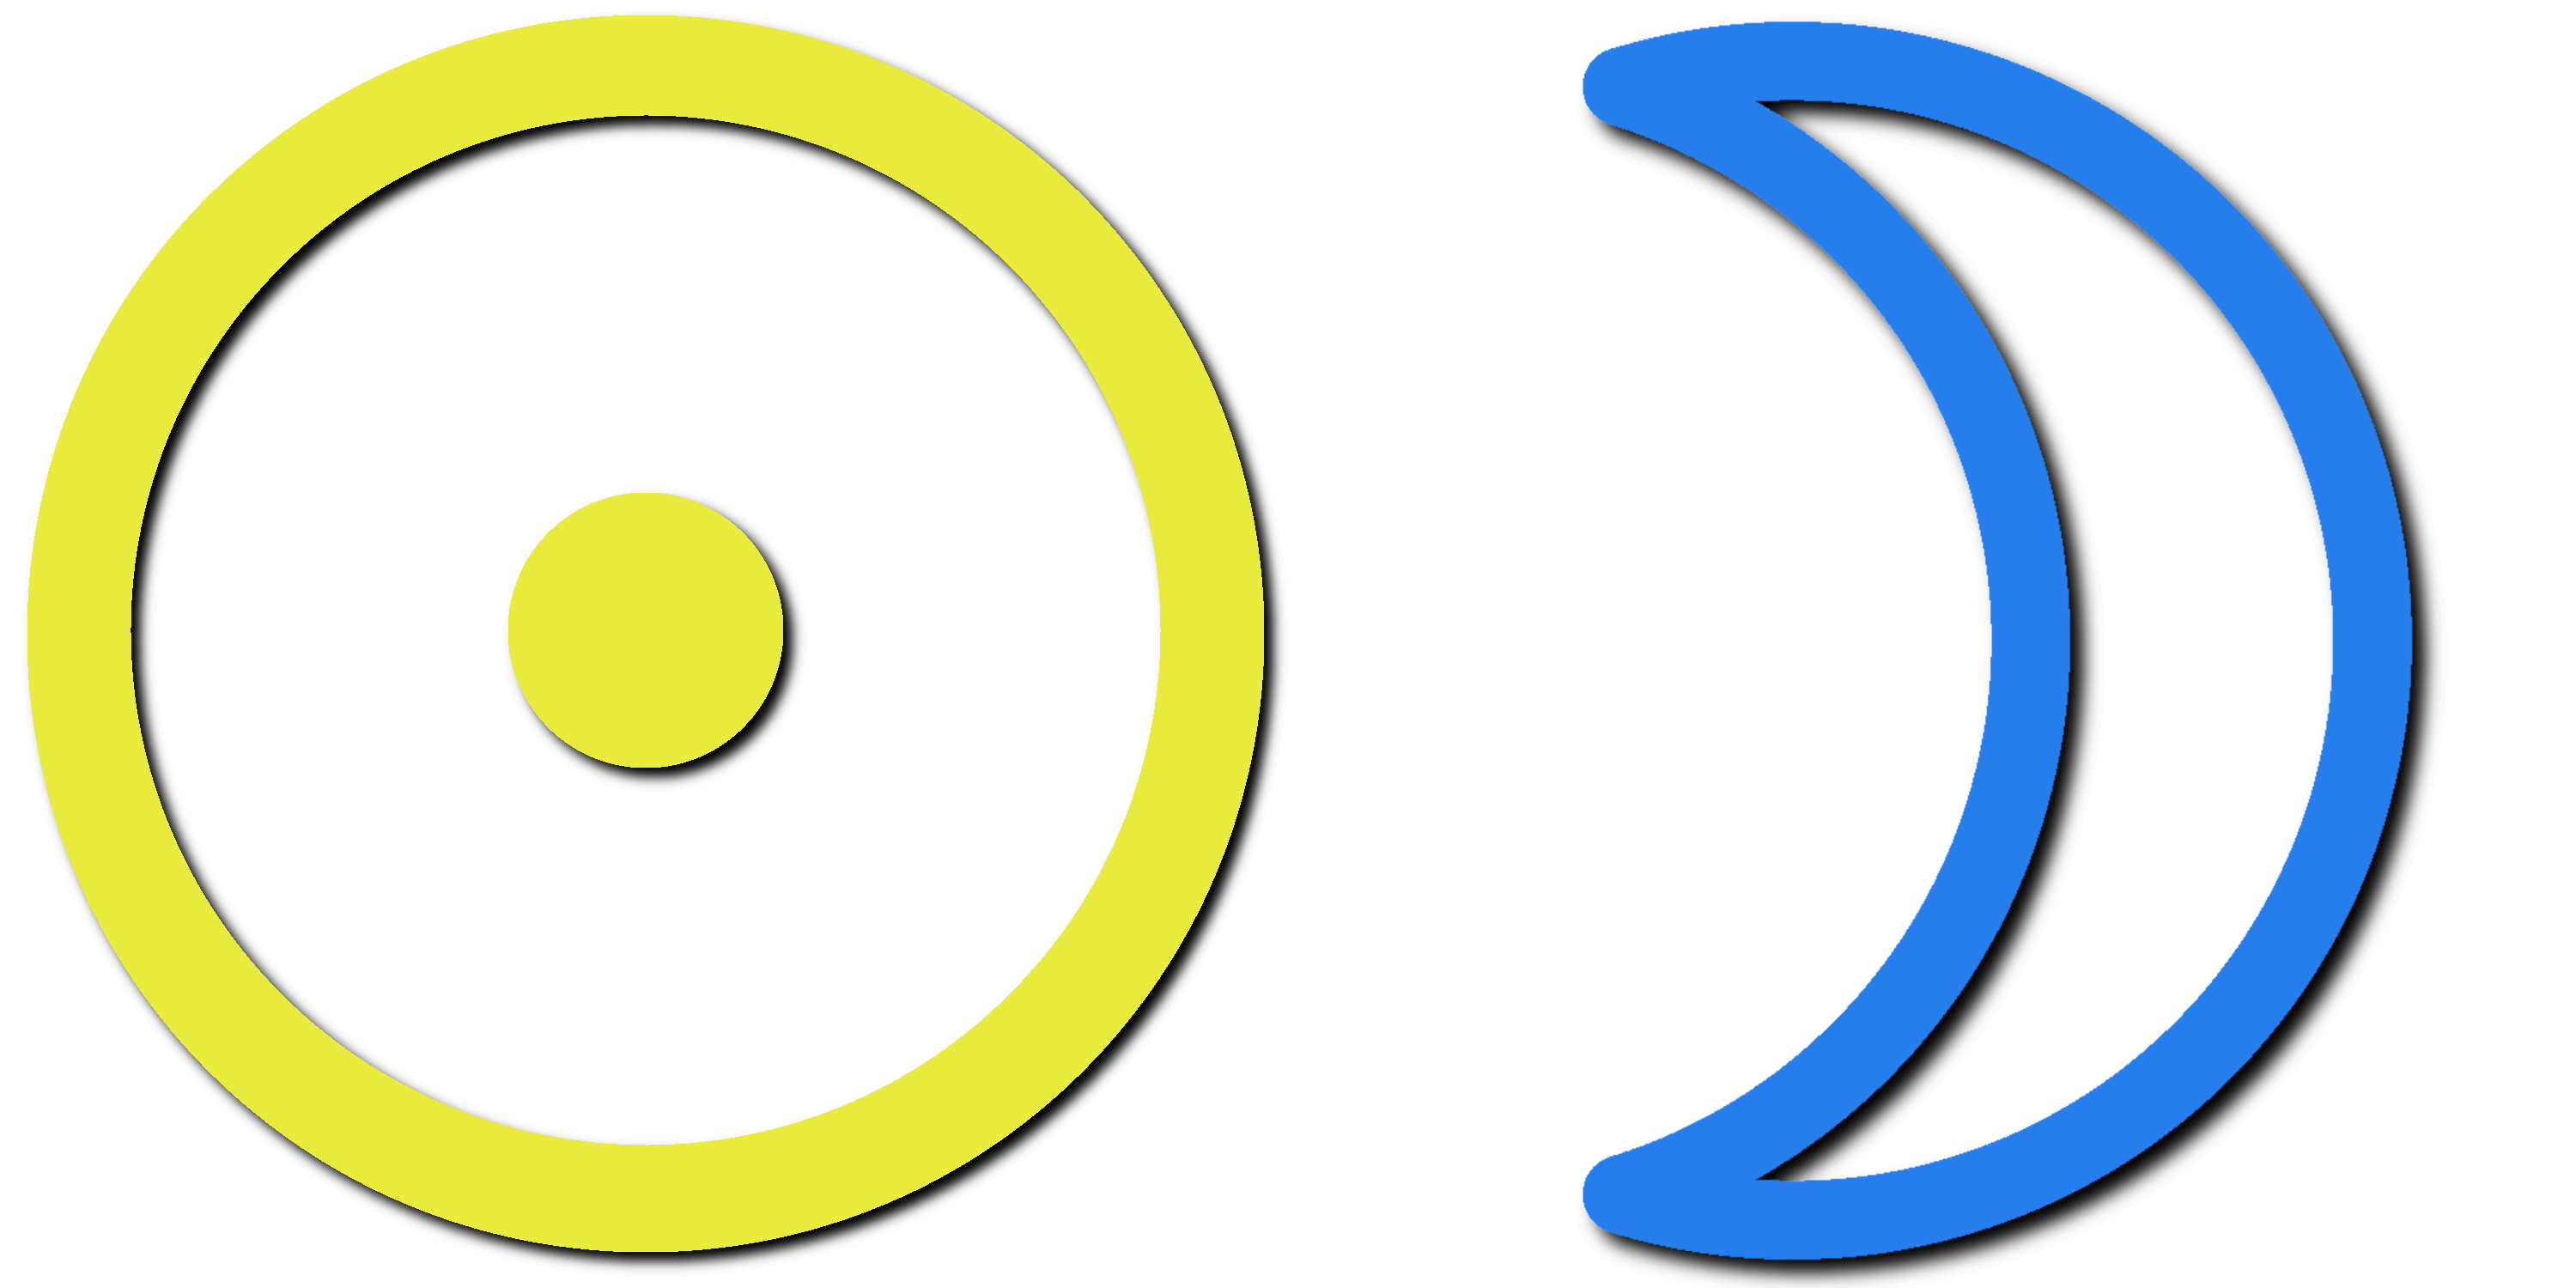 Sun and Moon symbols